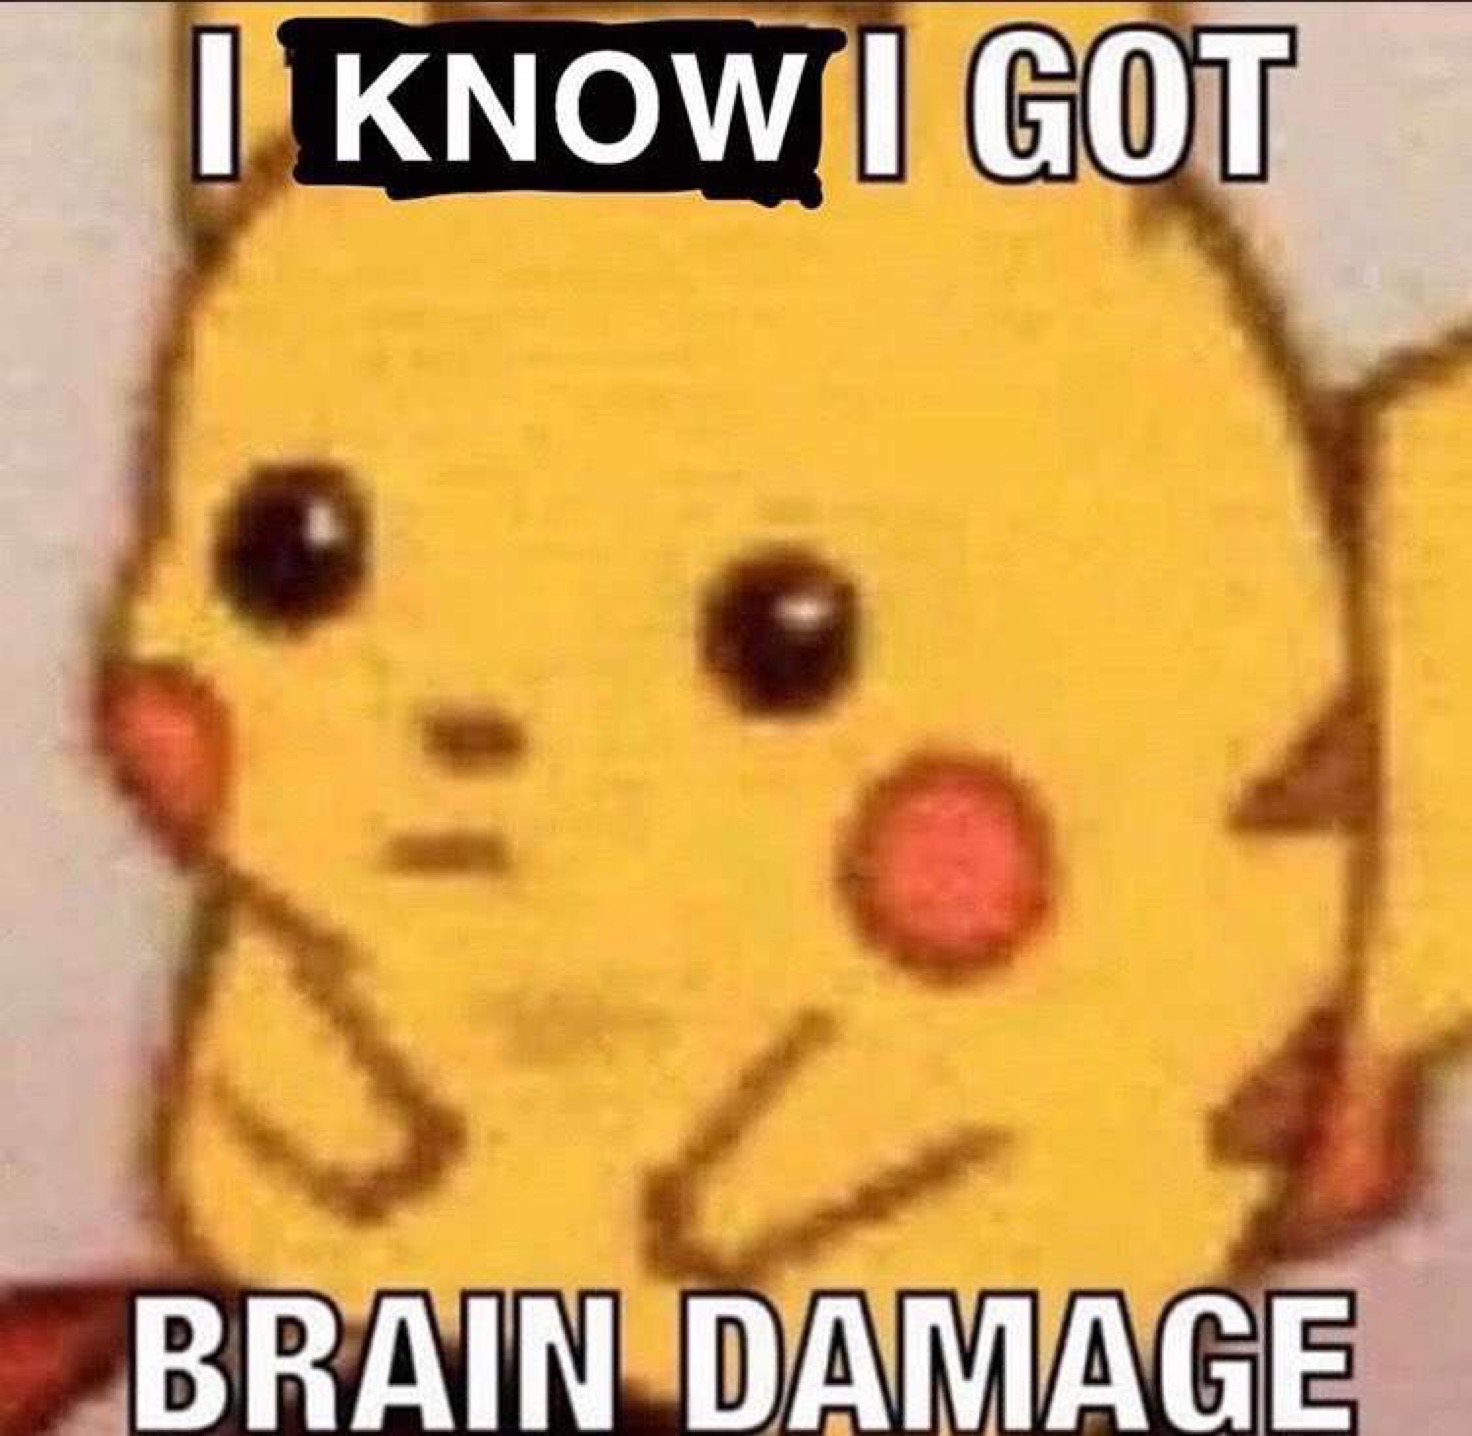 dank meme - think i got brain damage meme - I Know I Got Brain Damage